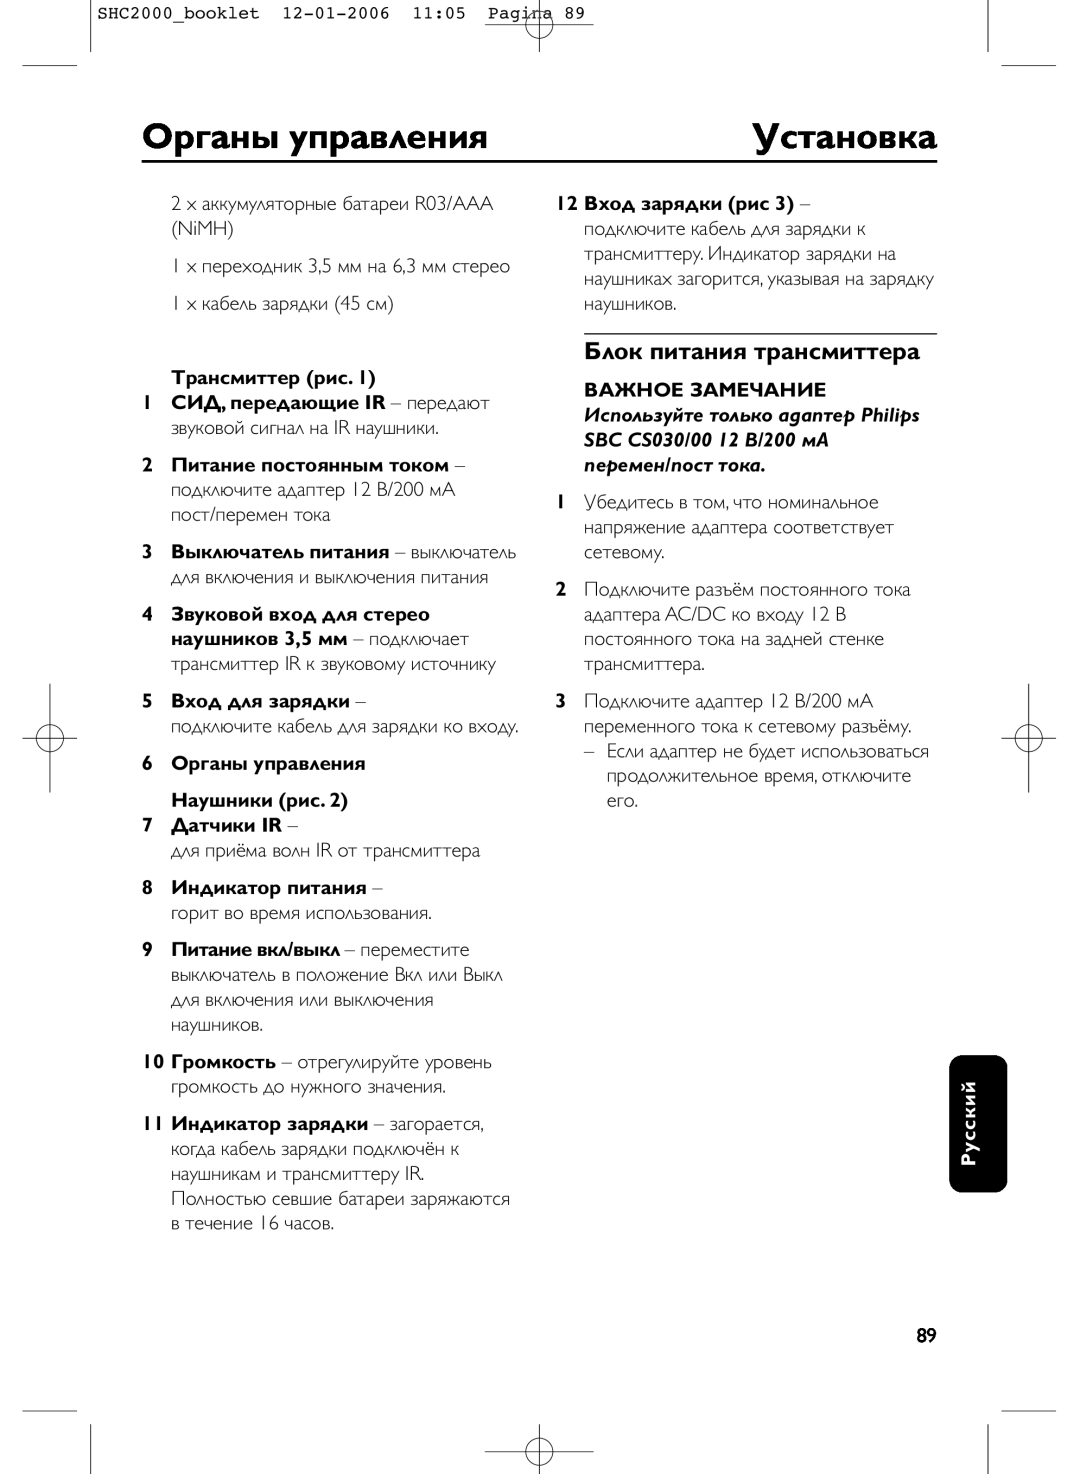 Philips SHC2000 manual Оpганы упpавления, Установка, Блок питания тpансмиттеpа, Тpансмиттеp рис, 5Вxод для заpядки, Русский 